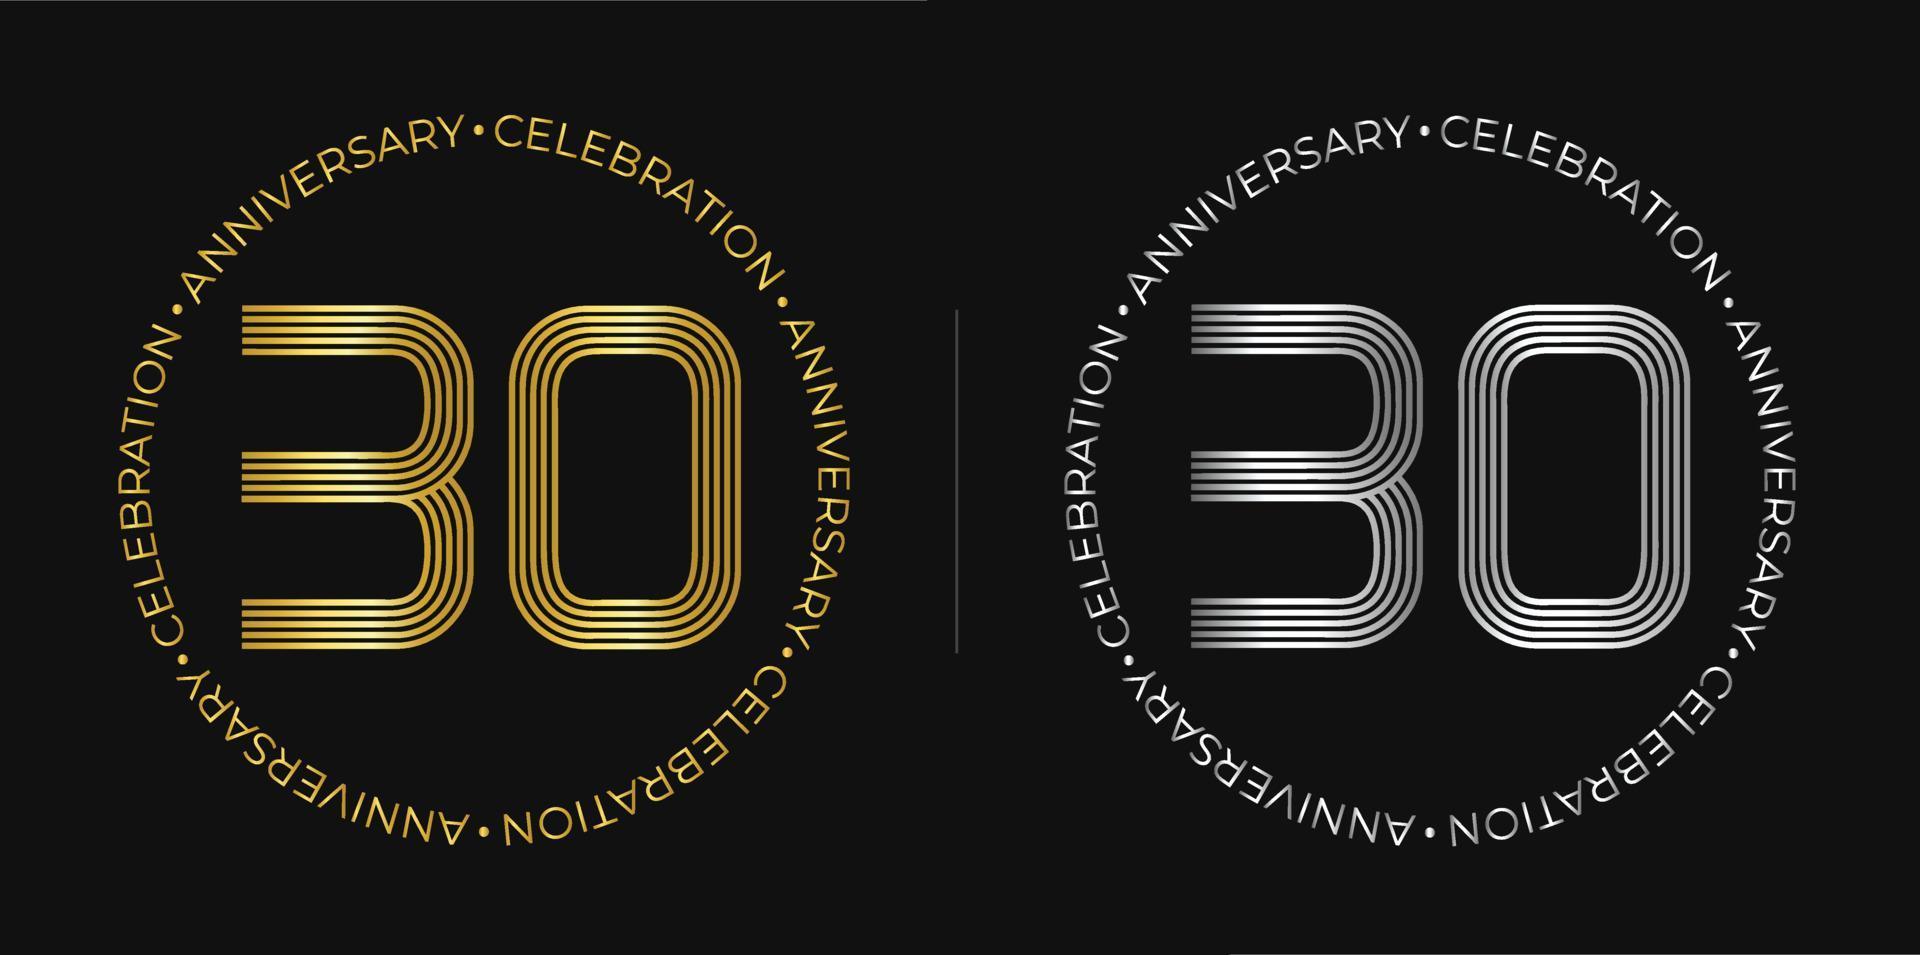 30e anniversaire. bannière de célébration d'anniversaire de trente ans aux couleurs dorées et argentées. logo circulaire avec des chiffres originaux aux lignes élégantes. vecteur